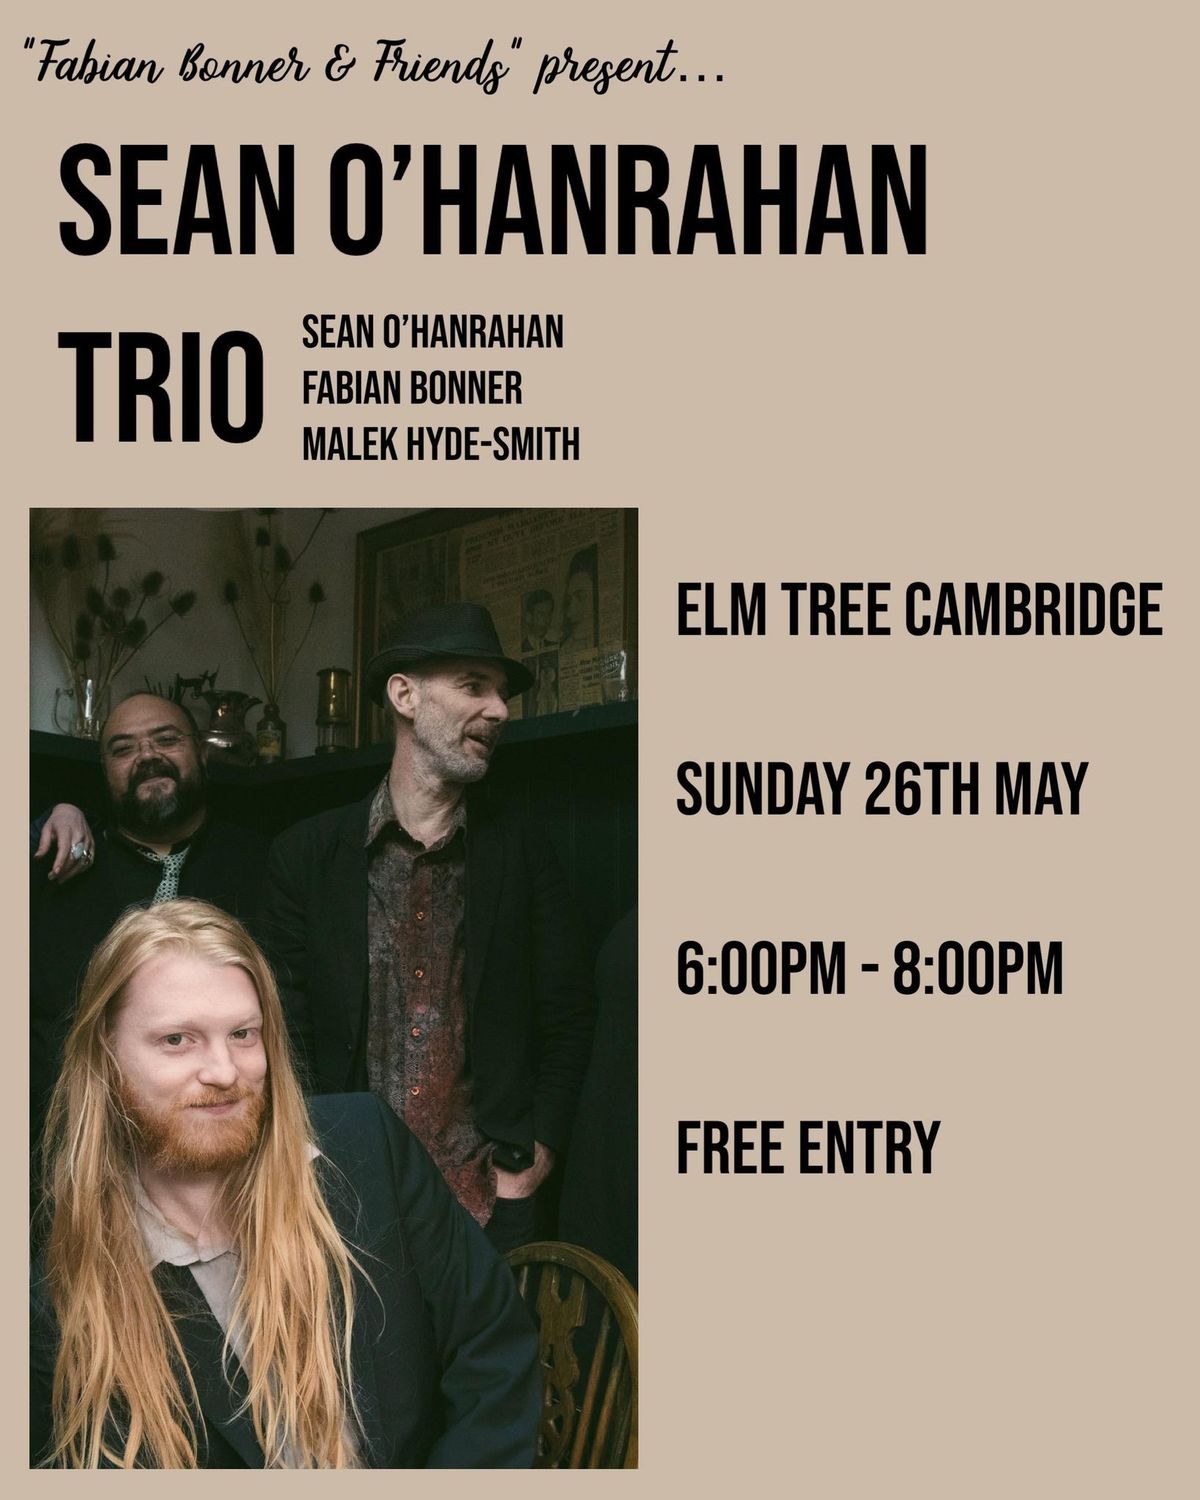 The Sean O'Hanrahan Trio